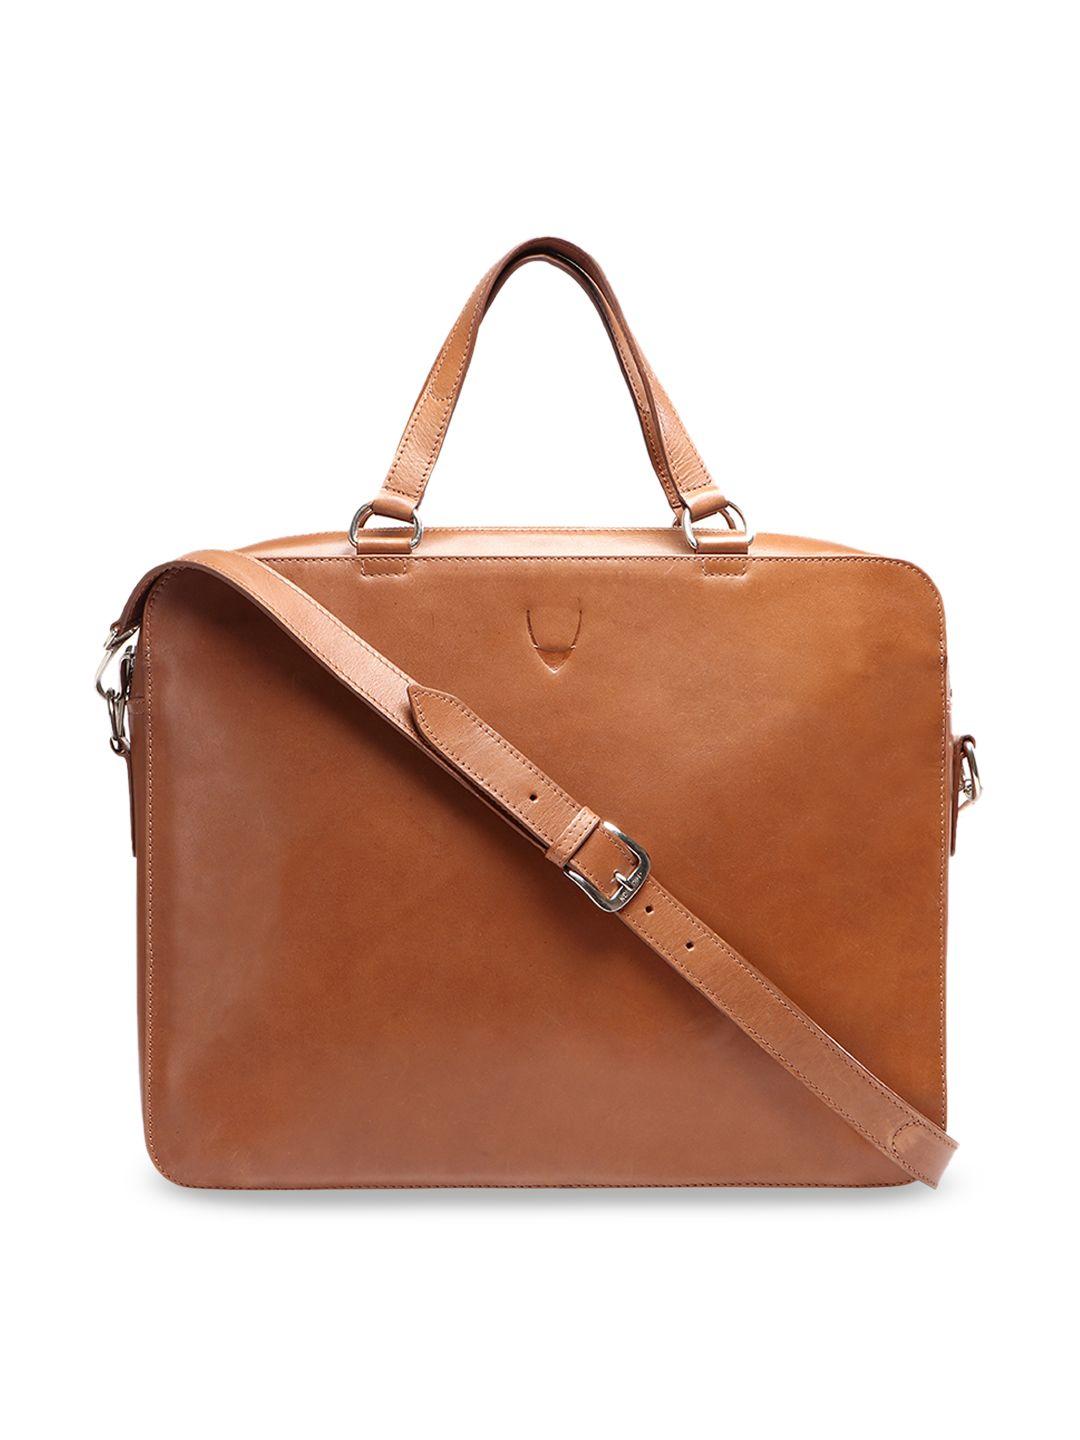 hidesign men tan solid leather messenger bag